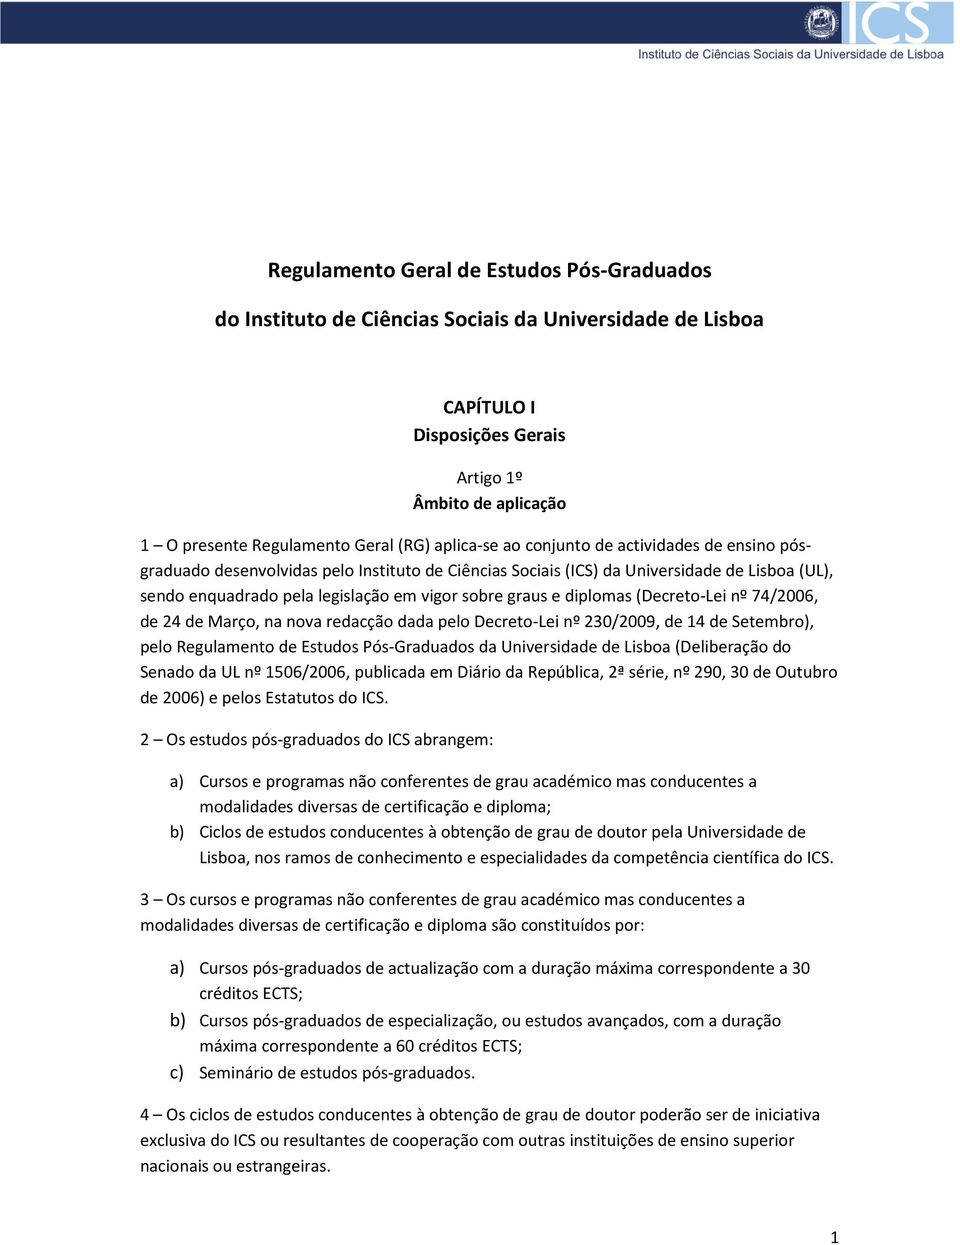 e diplomas (Decreto-Lei nº 74/2006, de 24 de Março, na nova redacção dada pelo Decreto-Lei nº 230/2009, de 14 de Setembro), pelo Regulamento de Estudos Pós-Graduados da Universidade de Lisboa